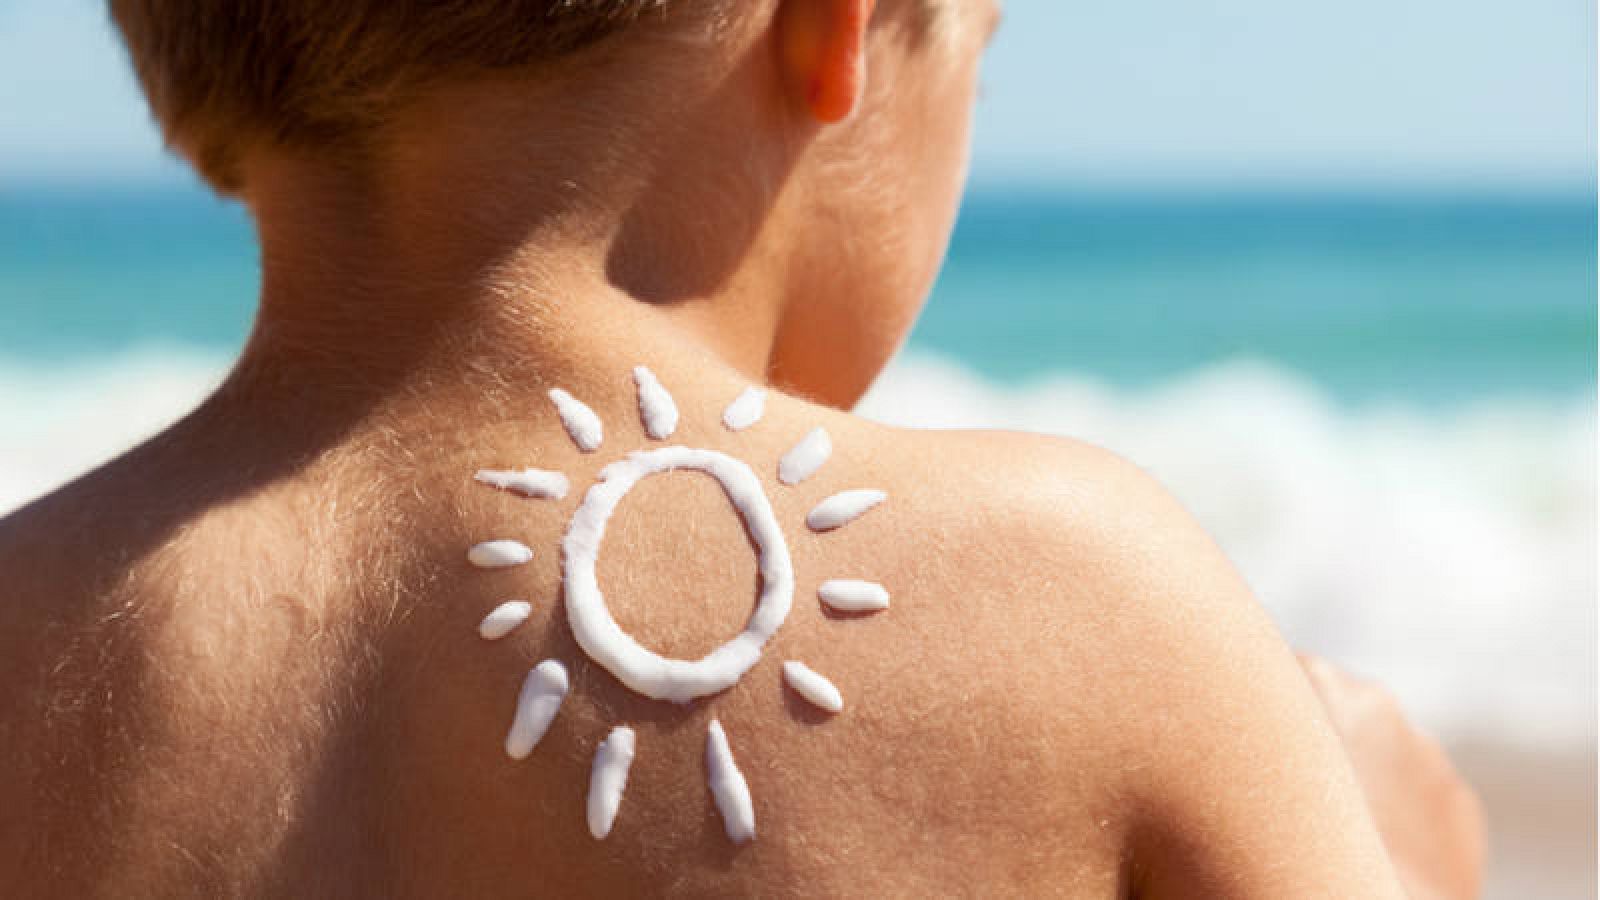  Un niño utiliza crema solar para protegerse de los rayos del sol